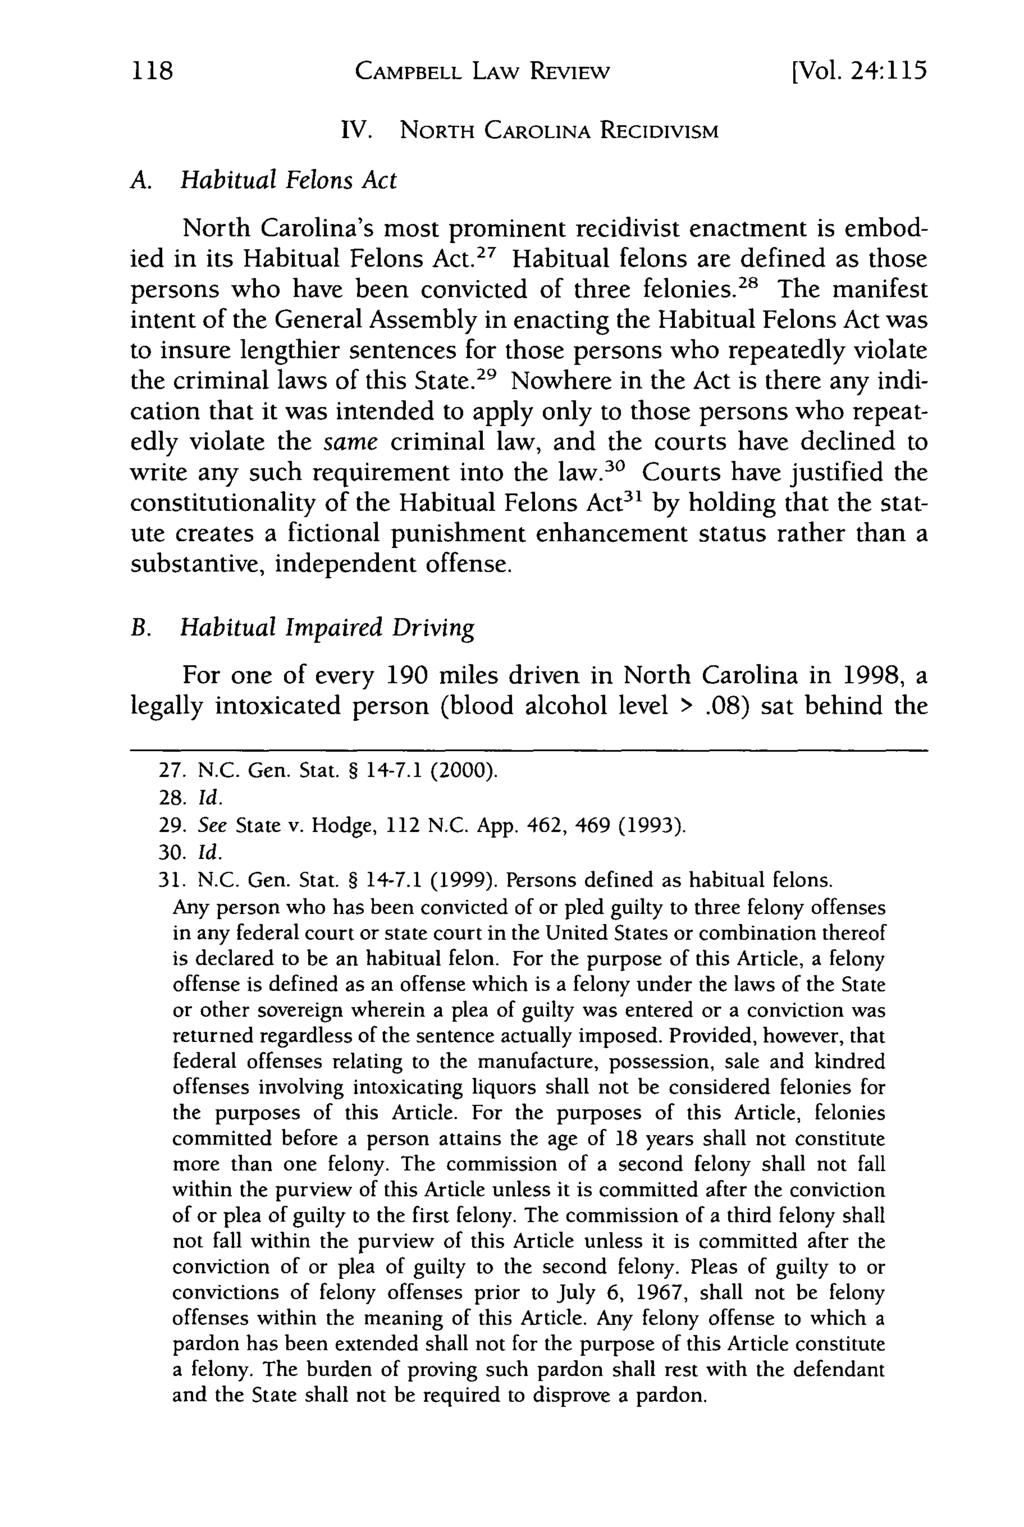 118 Campbell Law Review, Vol. 24, Iss. 1 [2001], Art. 6 CAMPBELL LAW REVIEW [Vol. 24:115 IV. NORTH CAROLINA RECIDIVISM A.